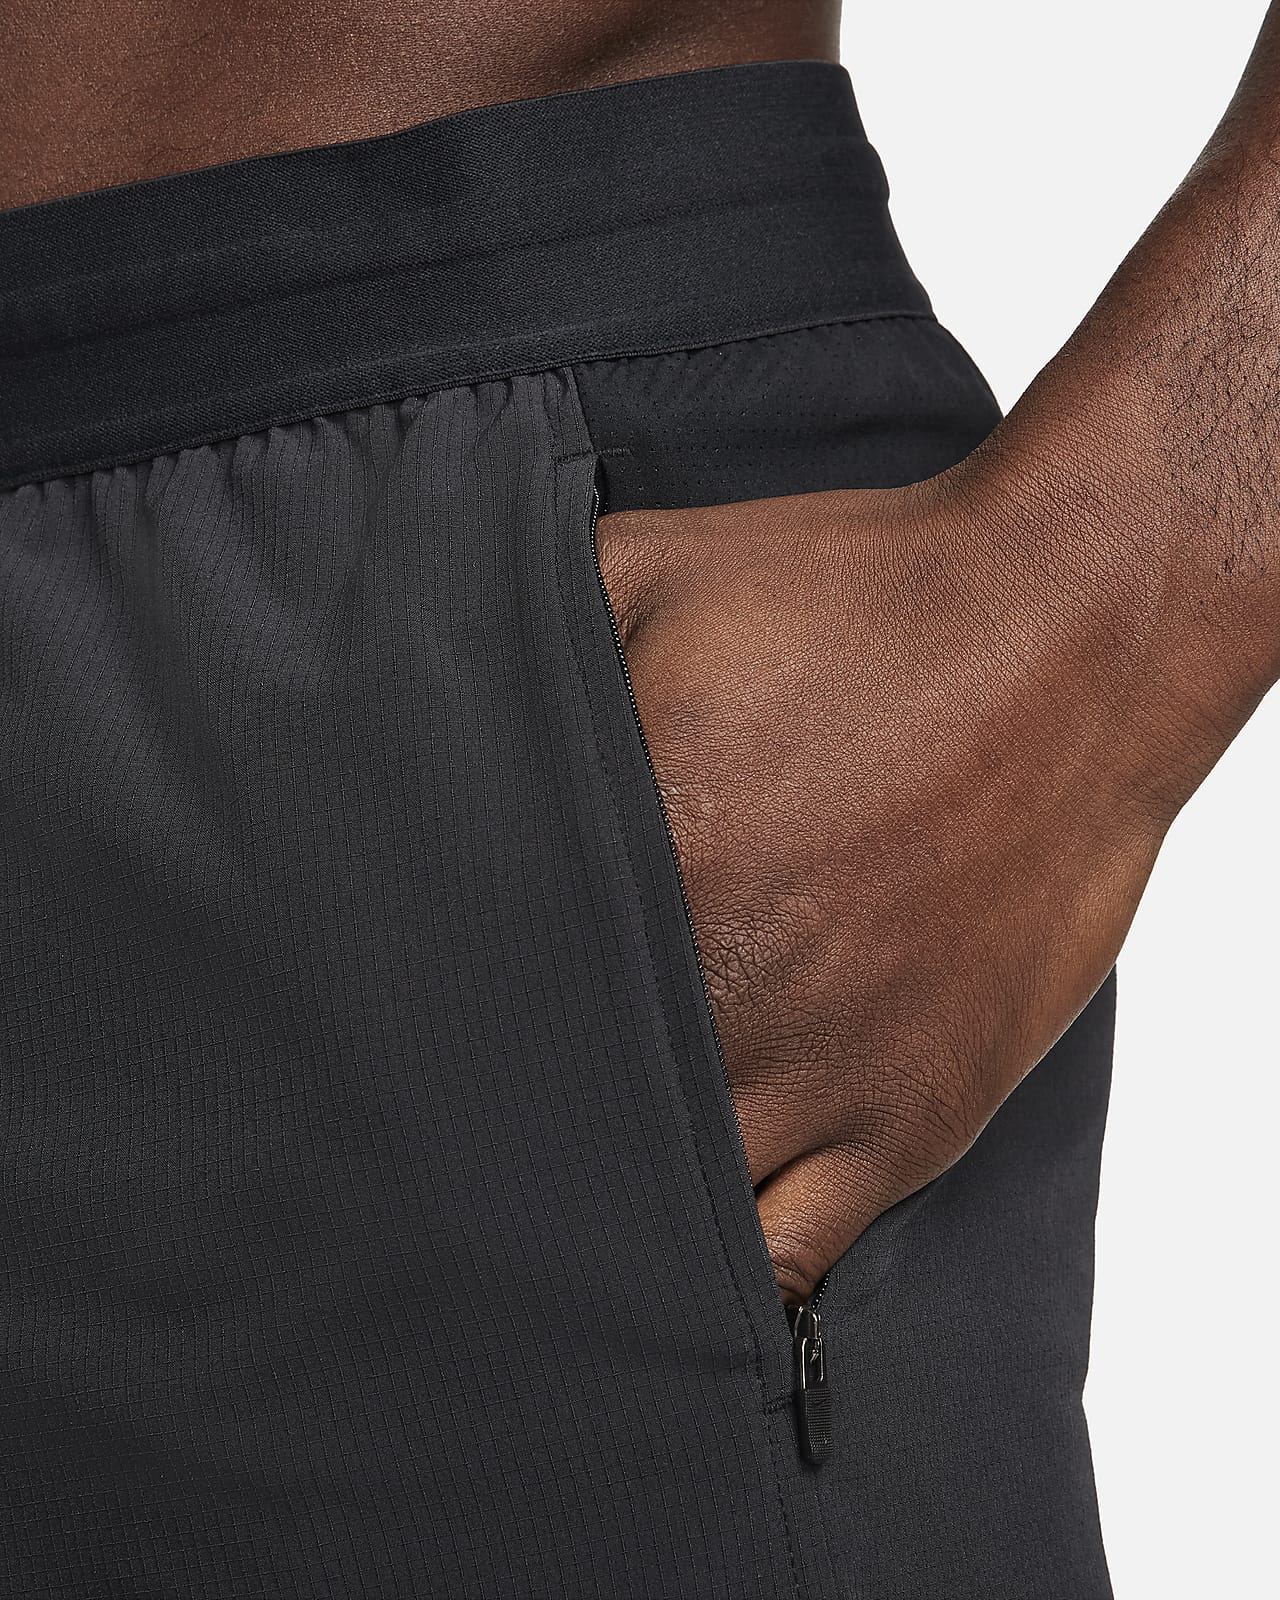 Nike Dri-Fit Flex Running Pants Black CU5498-010 Size XL